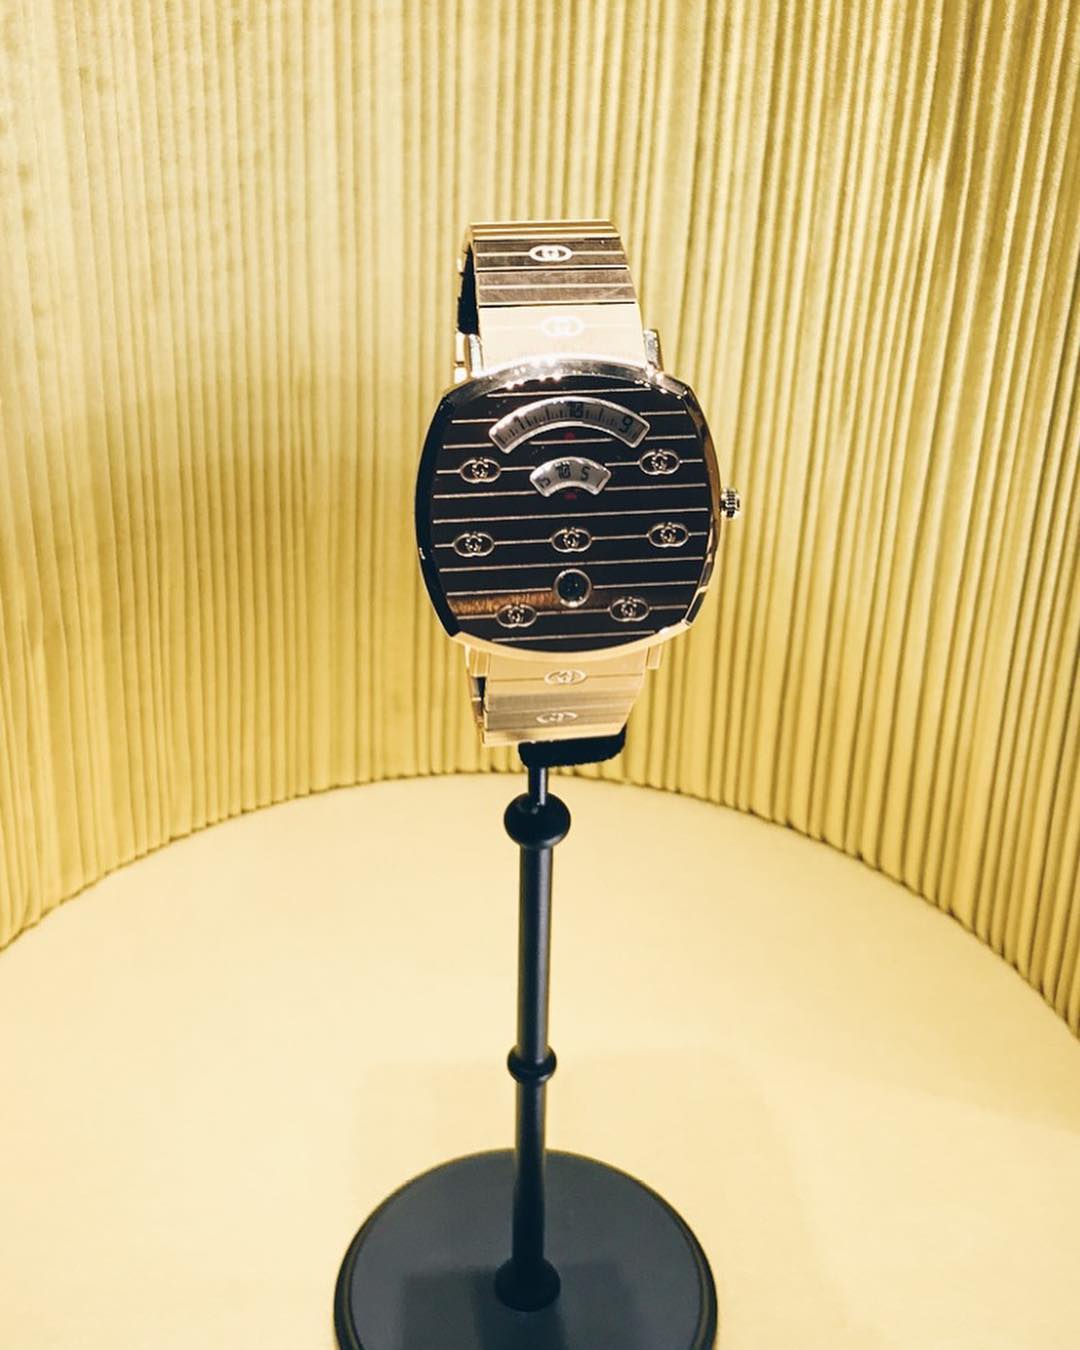 Gucci zaprezentował nową linię zegarków – Gucci Grip